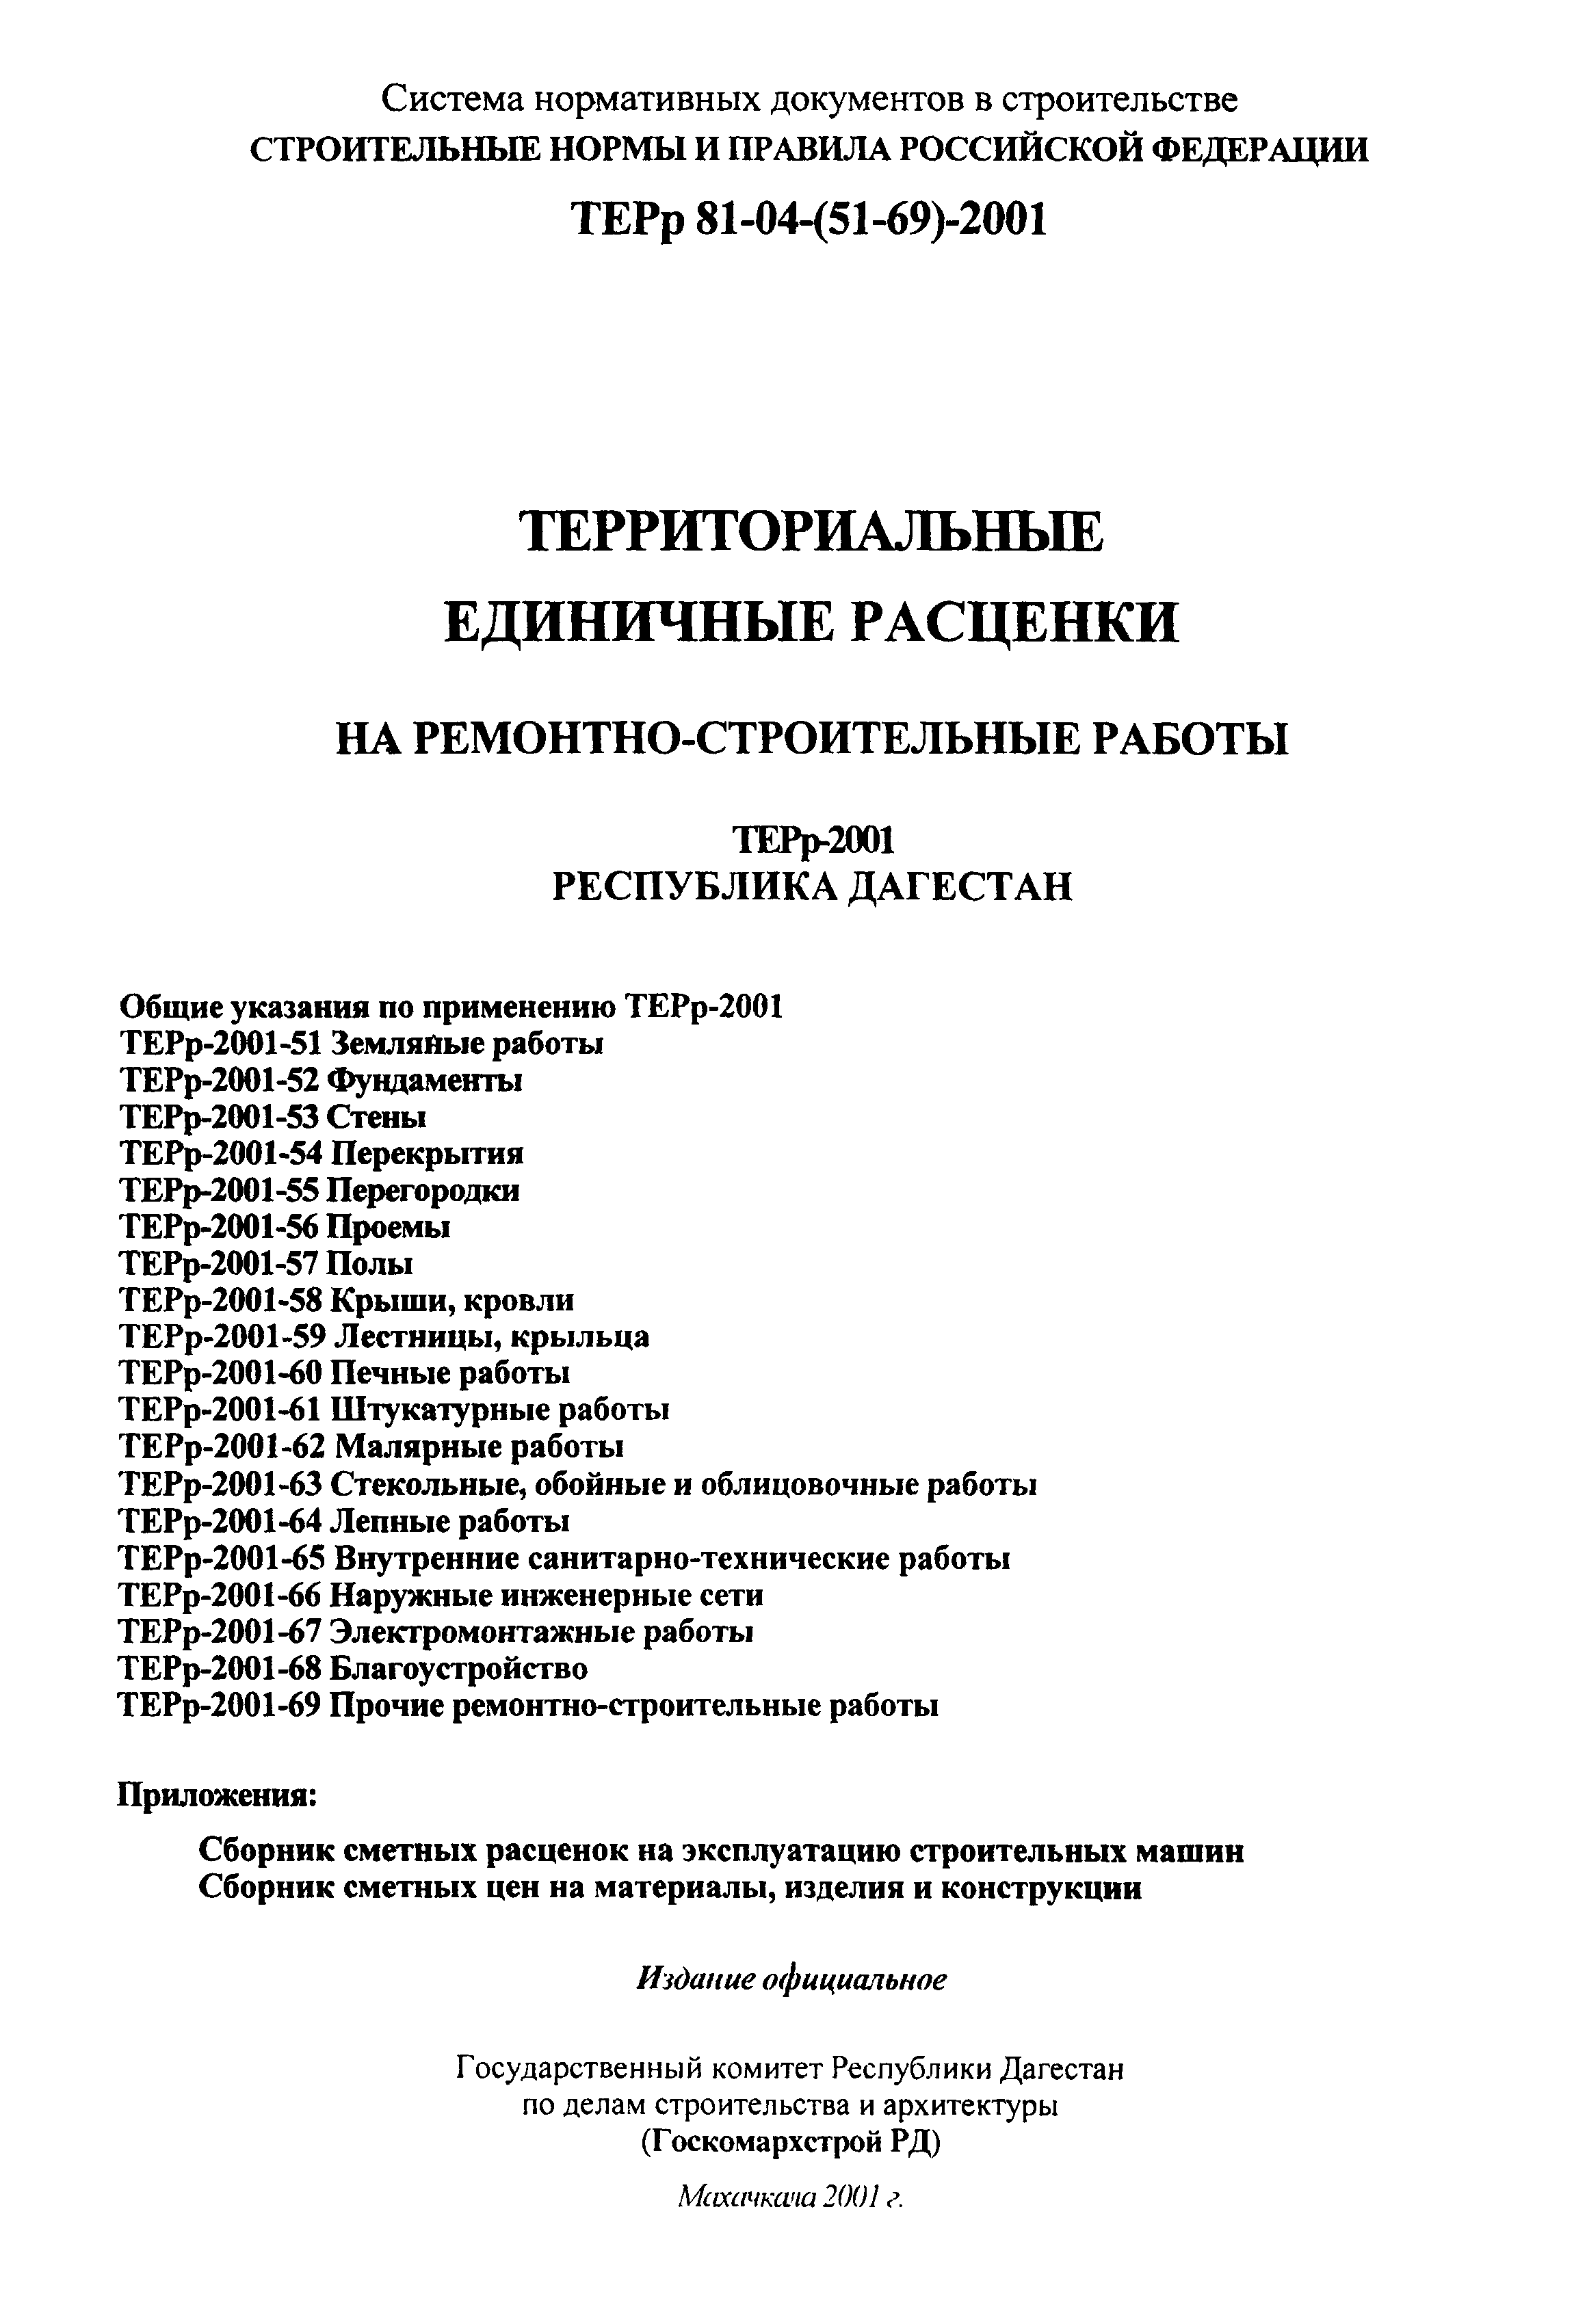 ТЕРр Республика Дагестан 2001-54